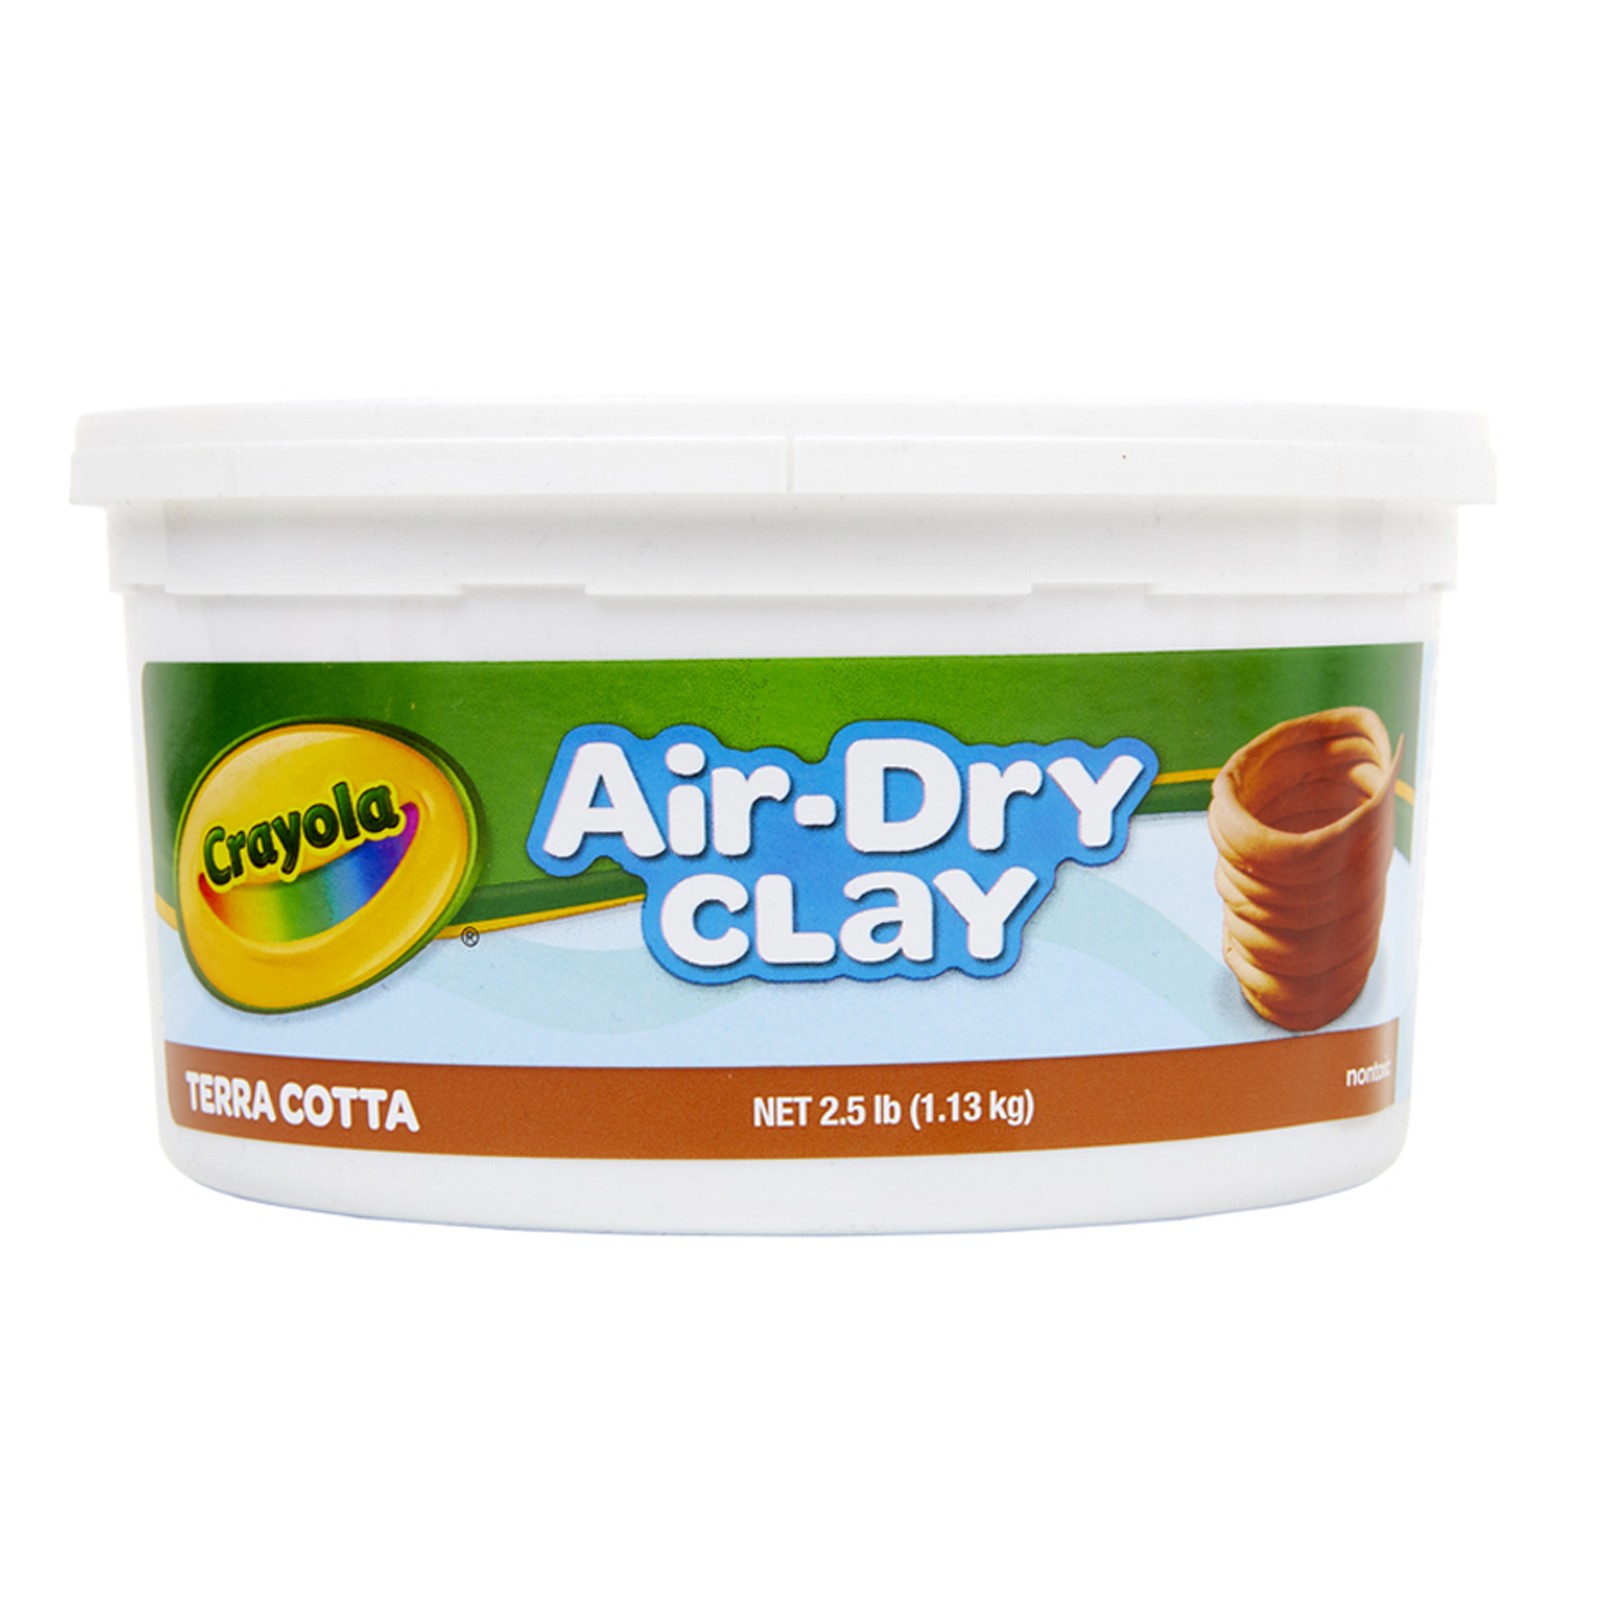 Air-Dry Clay, 2 1/2 lbs., Terra Cotta